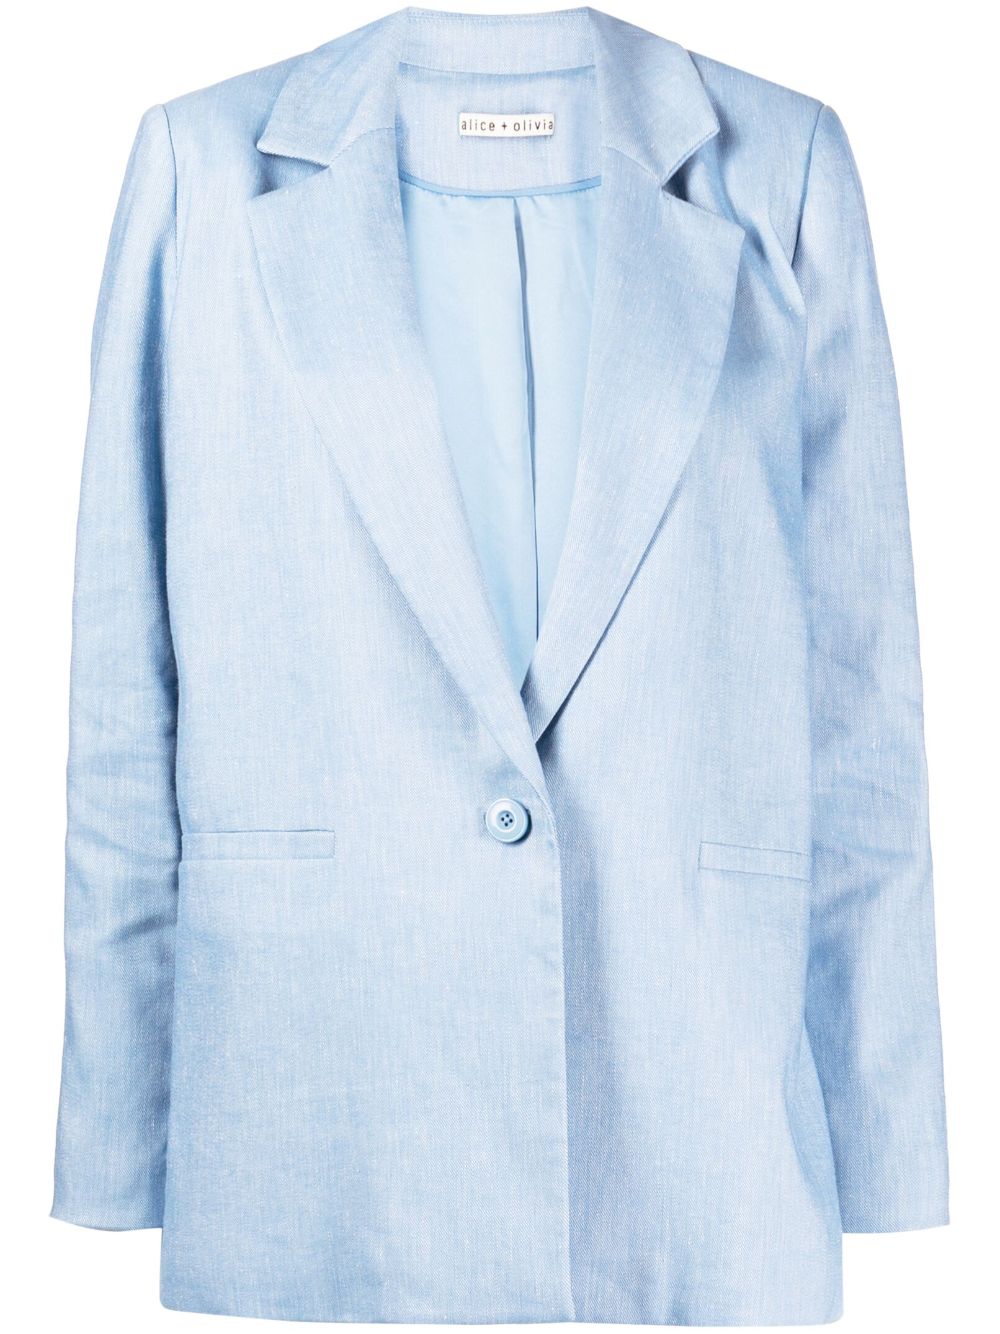 alice + olivia blazer denny à simple boutonnage - bleu